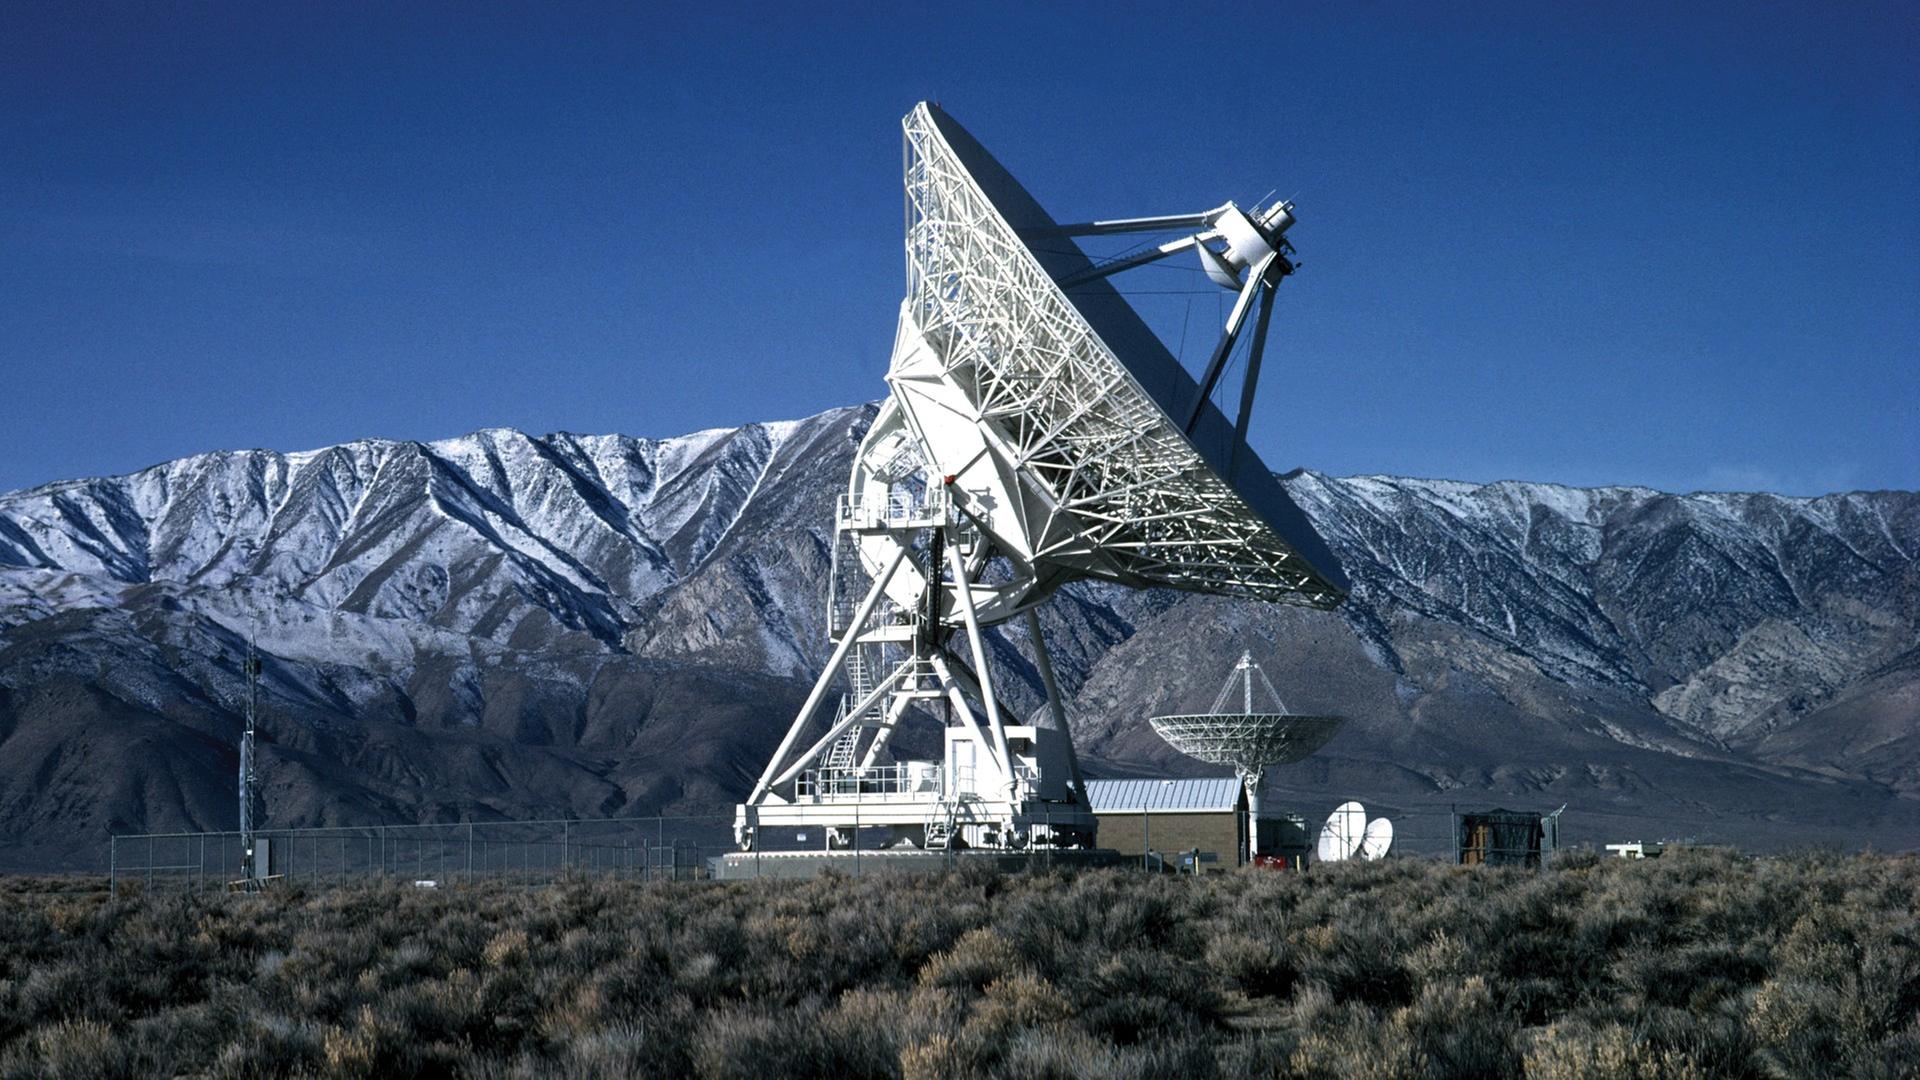 Das Radioteleskop im Owens Valley in Kalifornien gehört zum VLBA